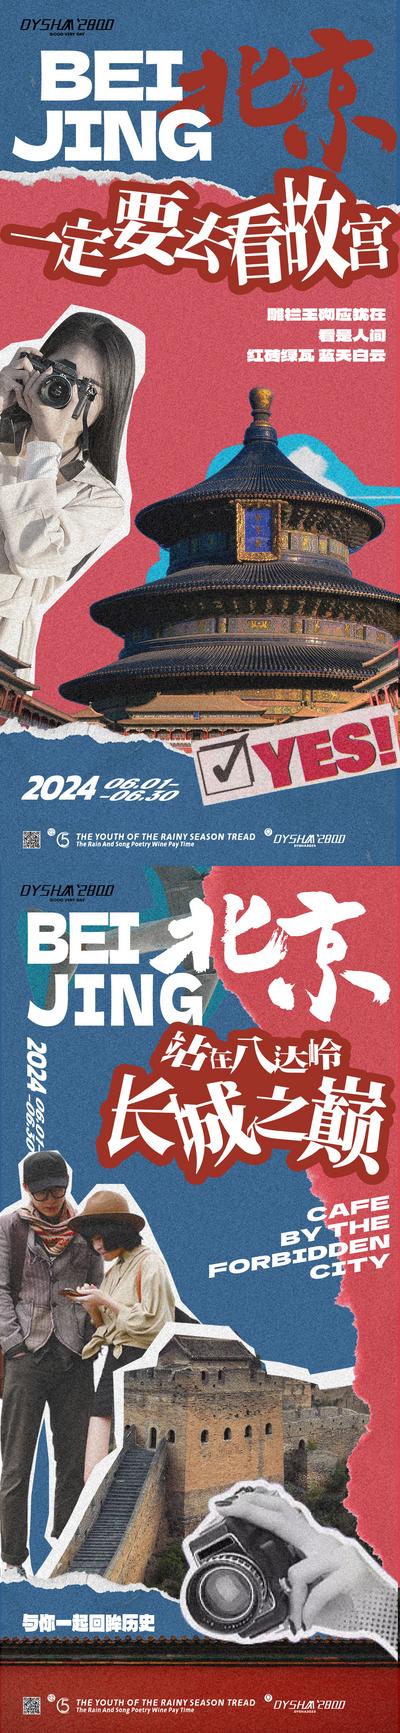 南门网 广告 海报 旅游 北京 旅行 故宫 天坛 地标 天安门 系列